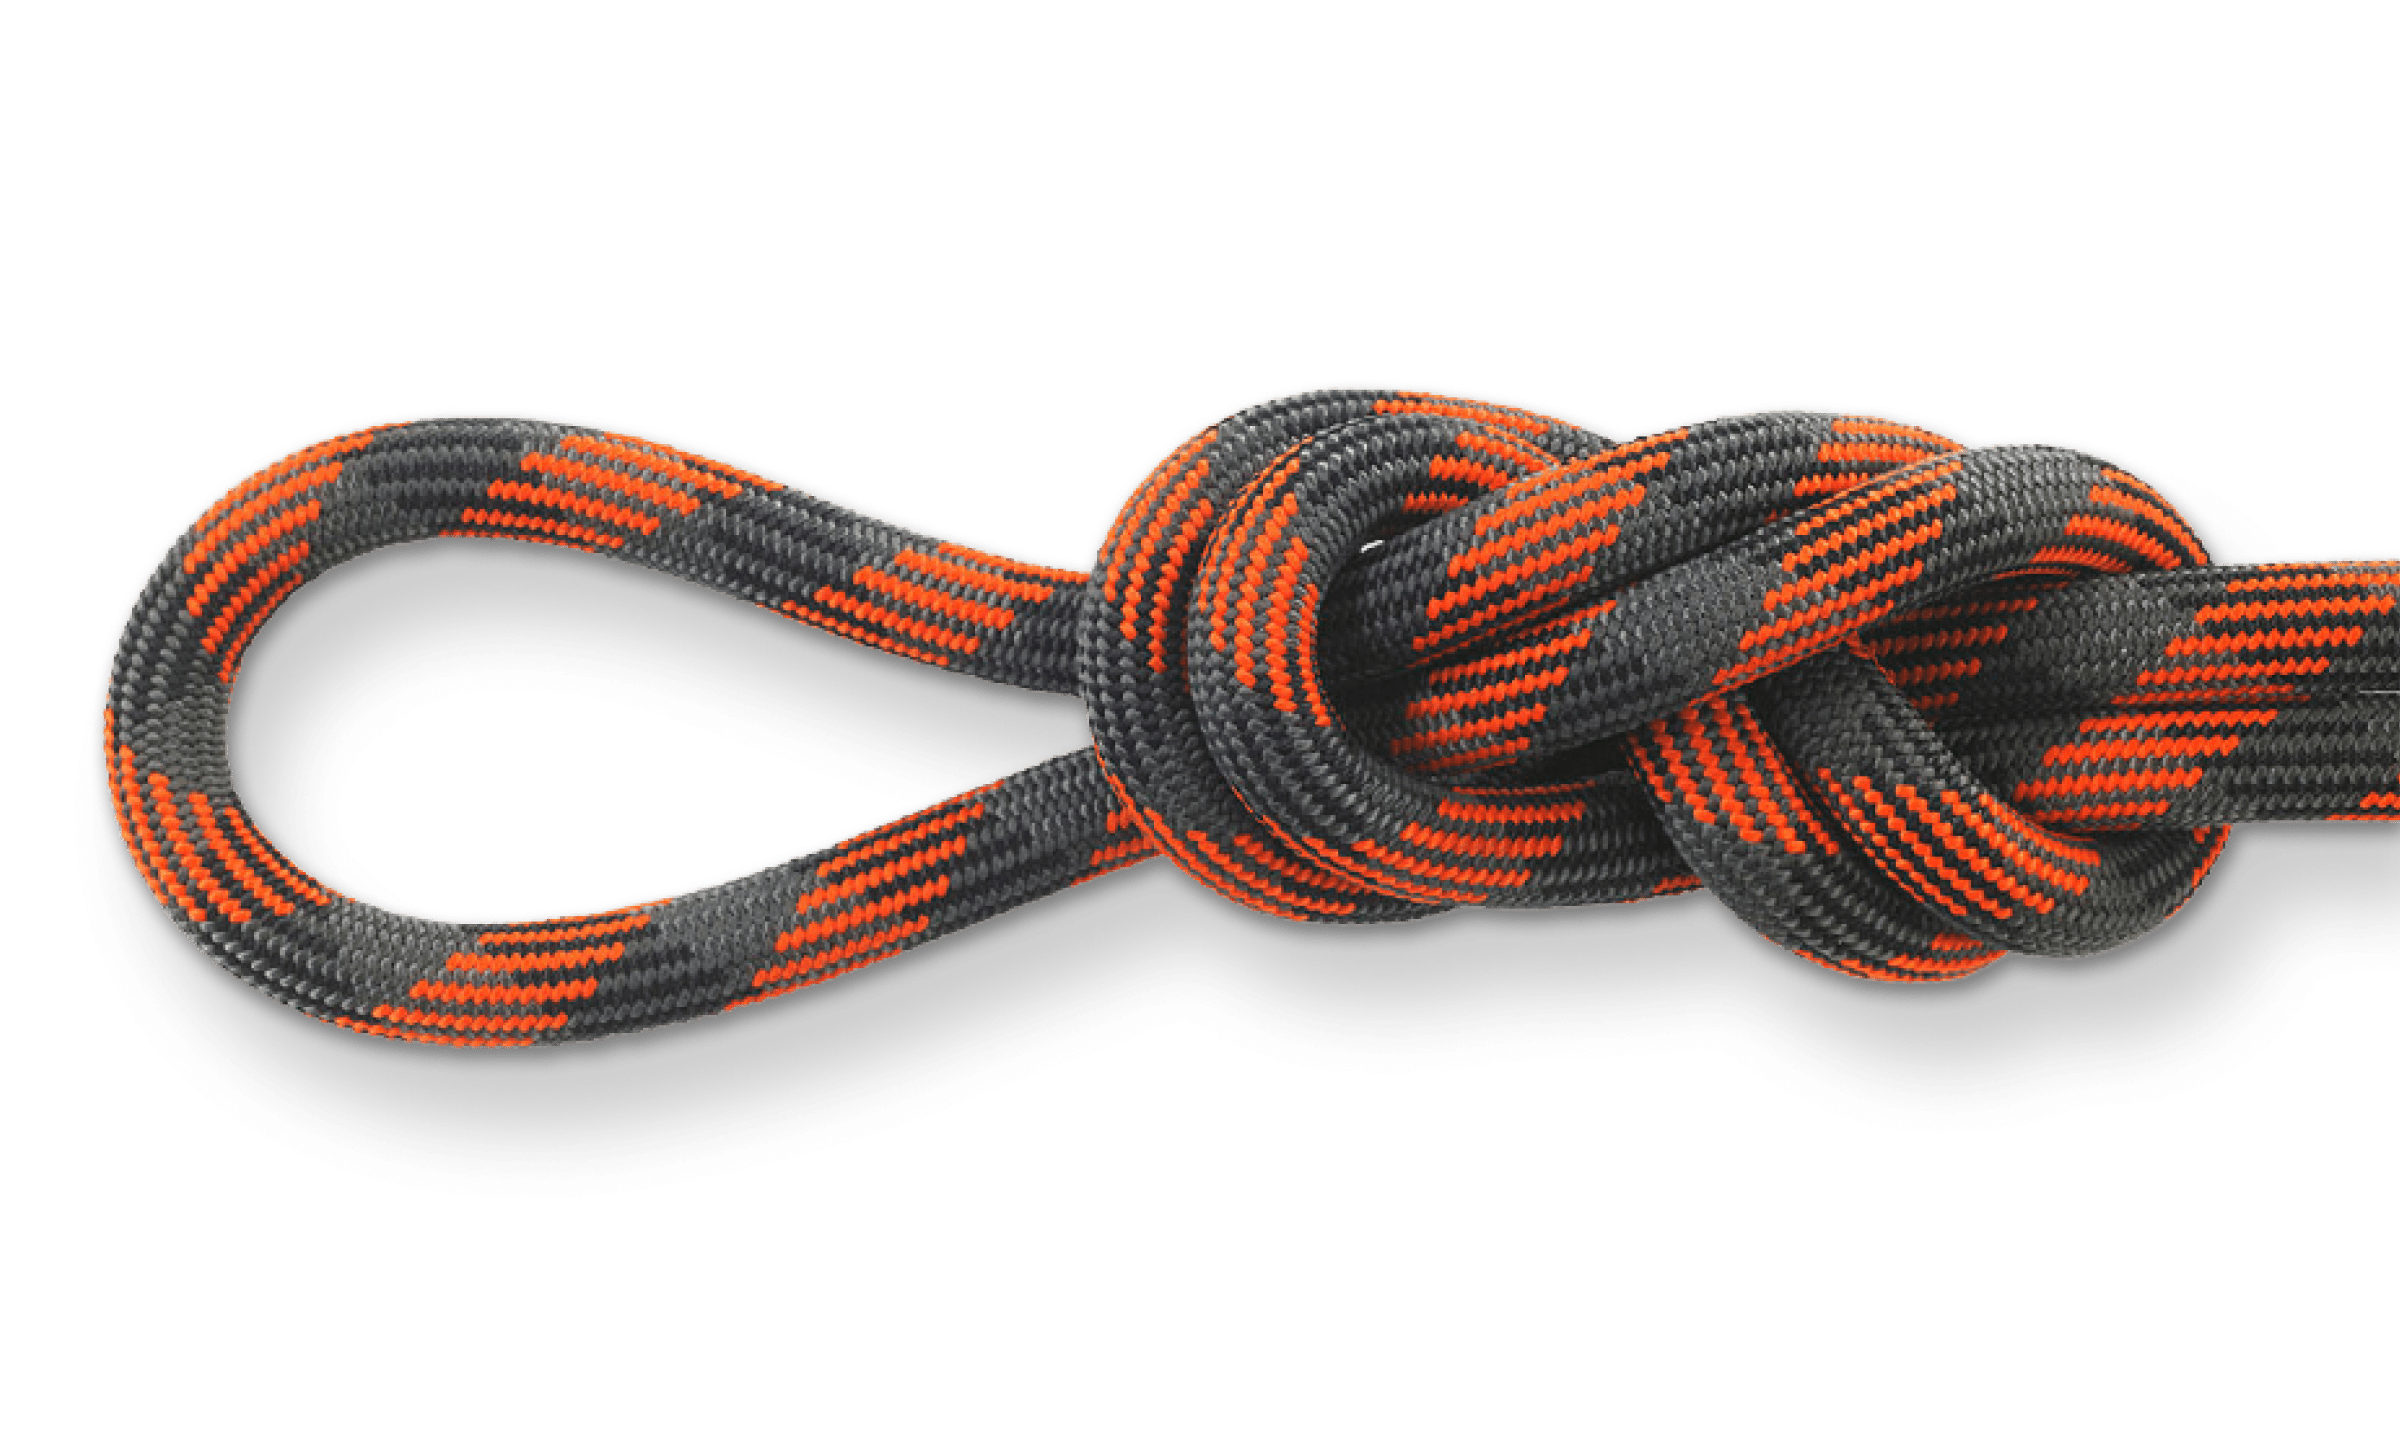 pinnacle rock climbing rope